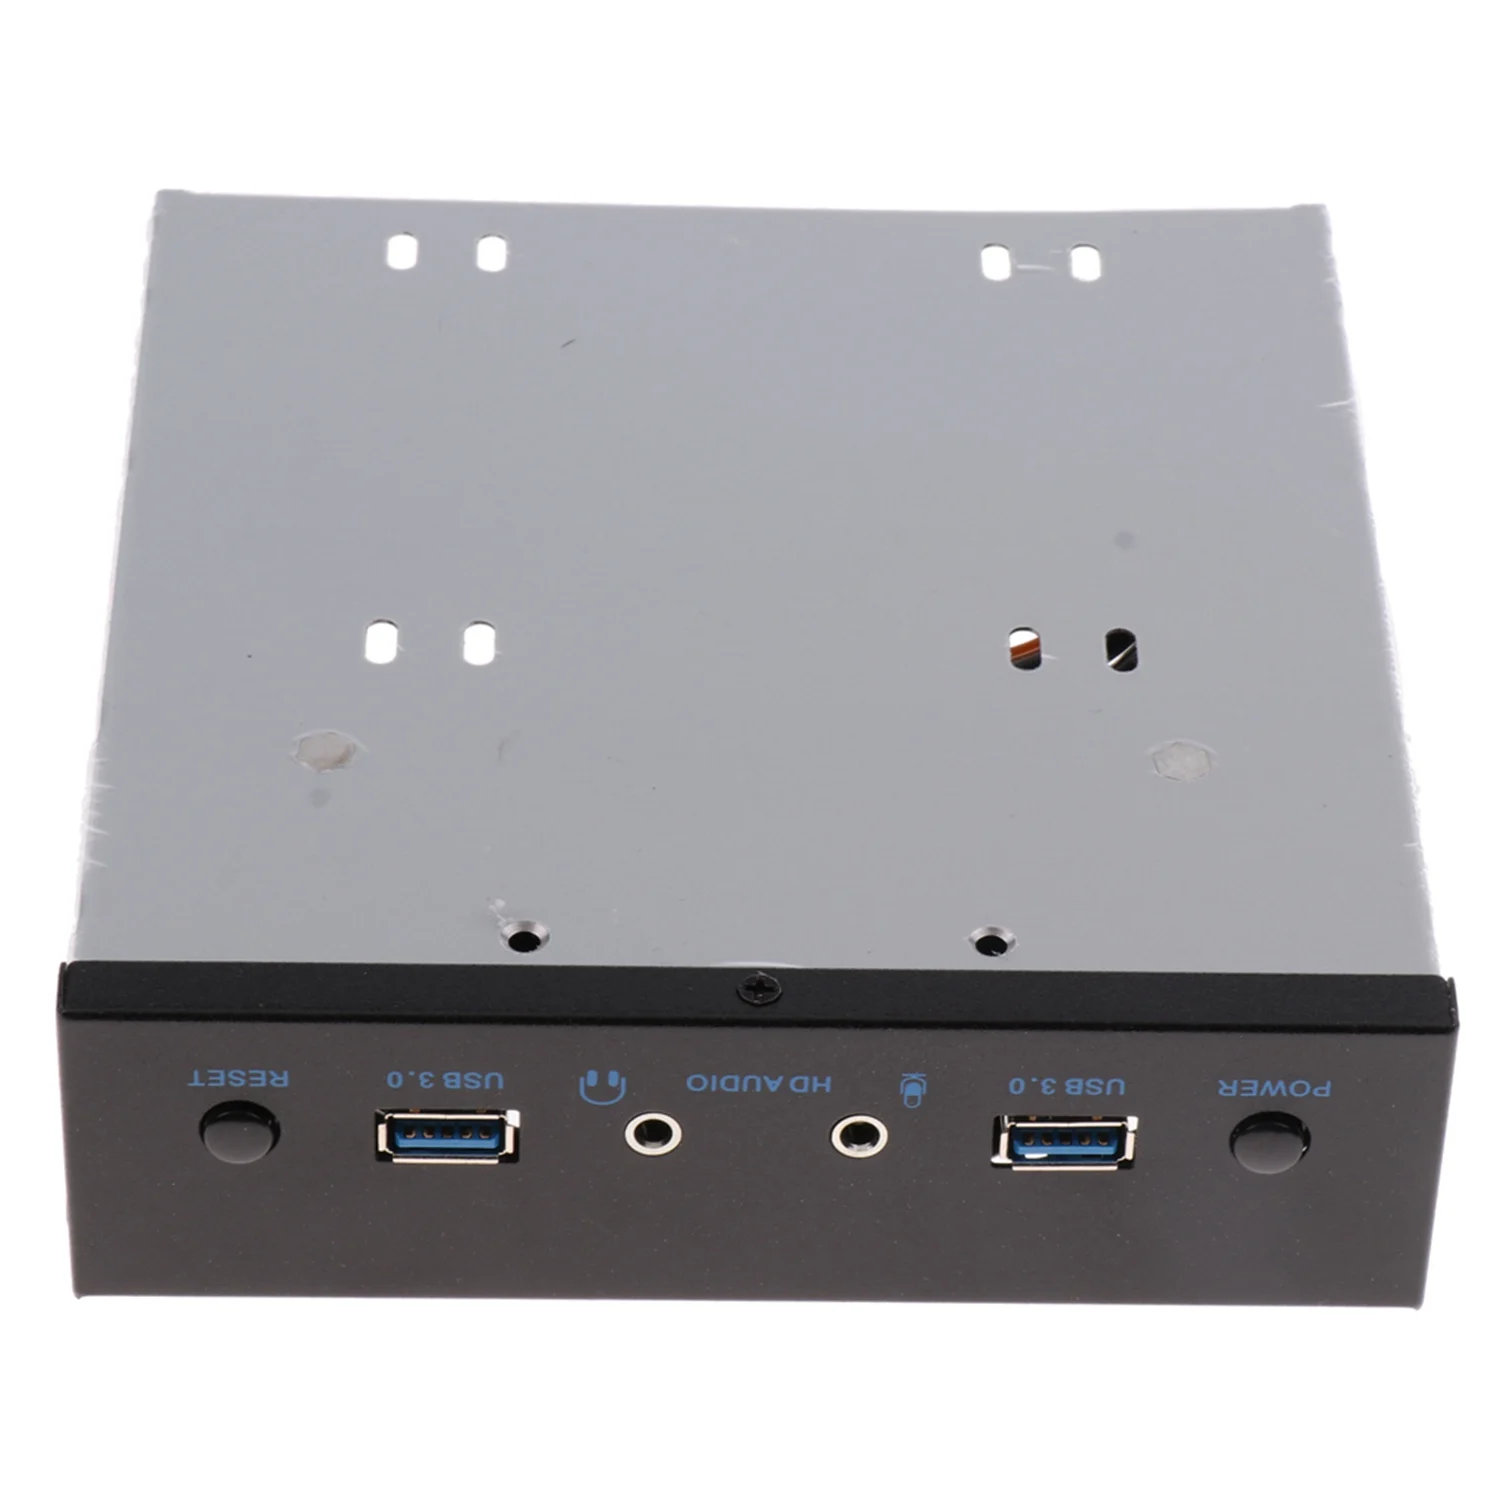 Usb 3,0 2 порта оптический привод Передняя панель адаптер расширения Usb 3,0 концентратор+ Hd аудио+ кнопка включения питания